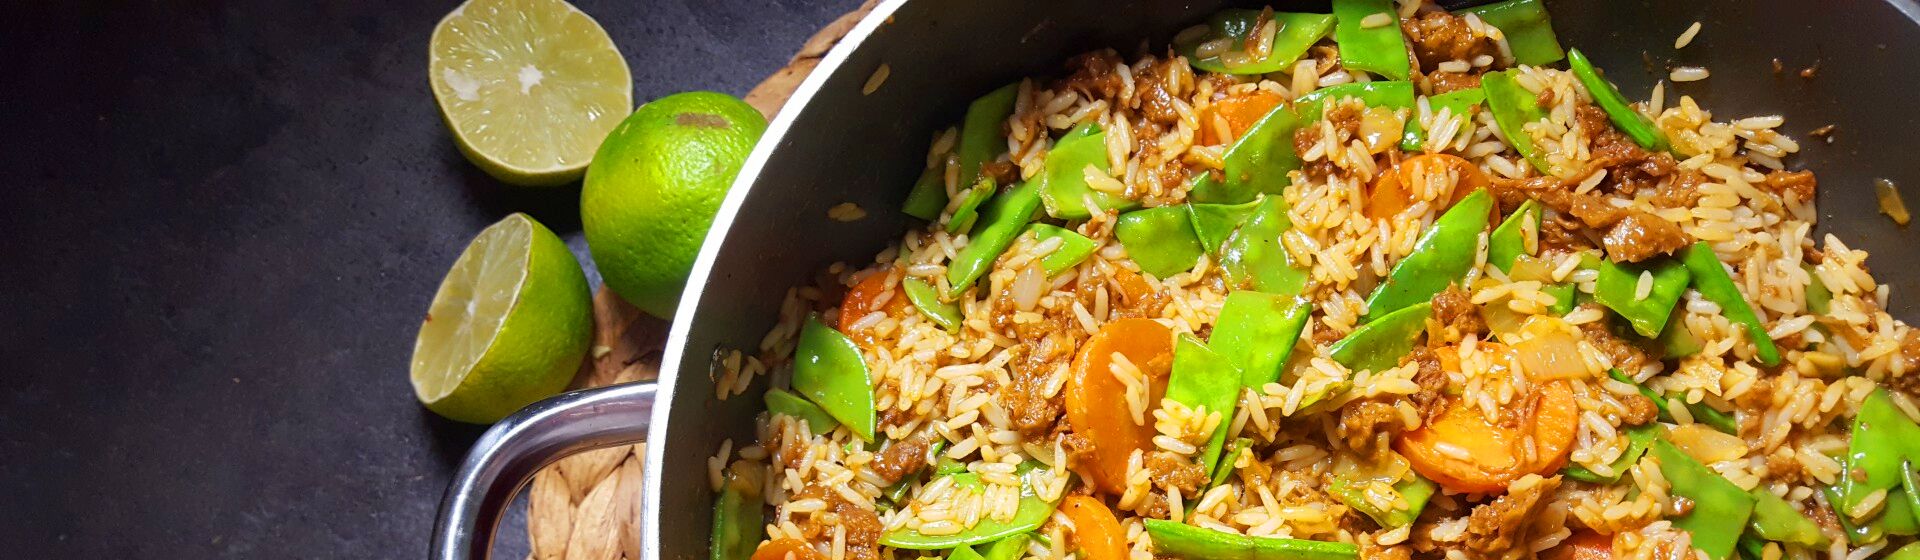 3 вкусных блюда из риса на сковороде